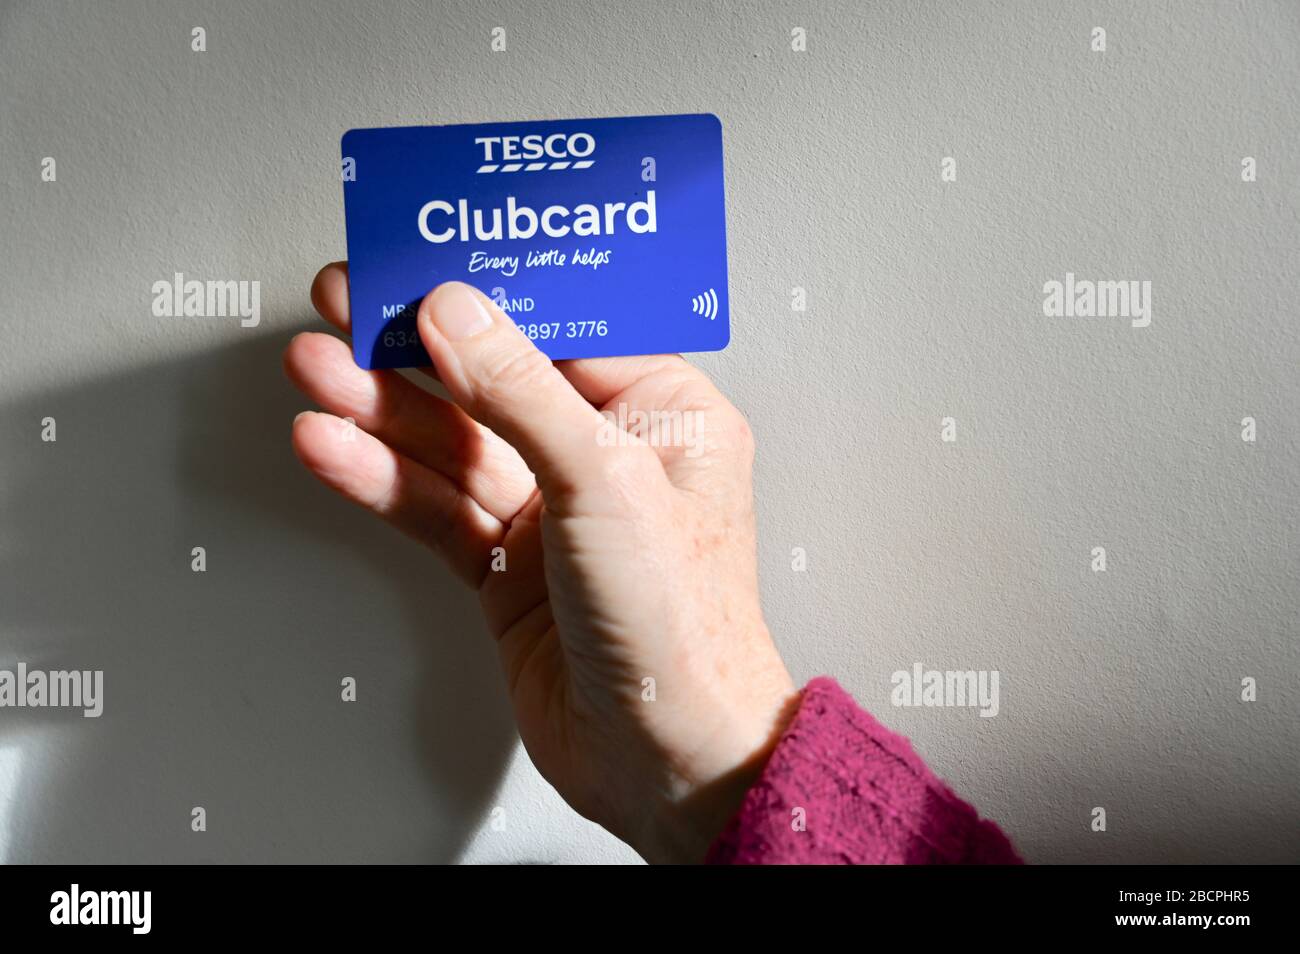 Tesco Clubcard loyalty card. Stock Photo